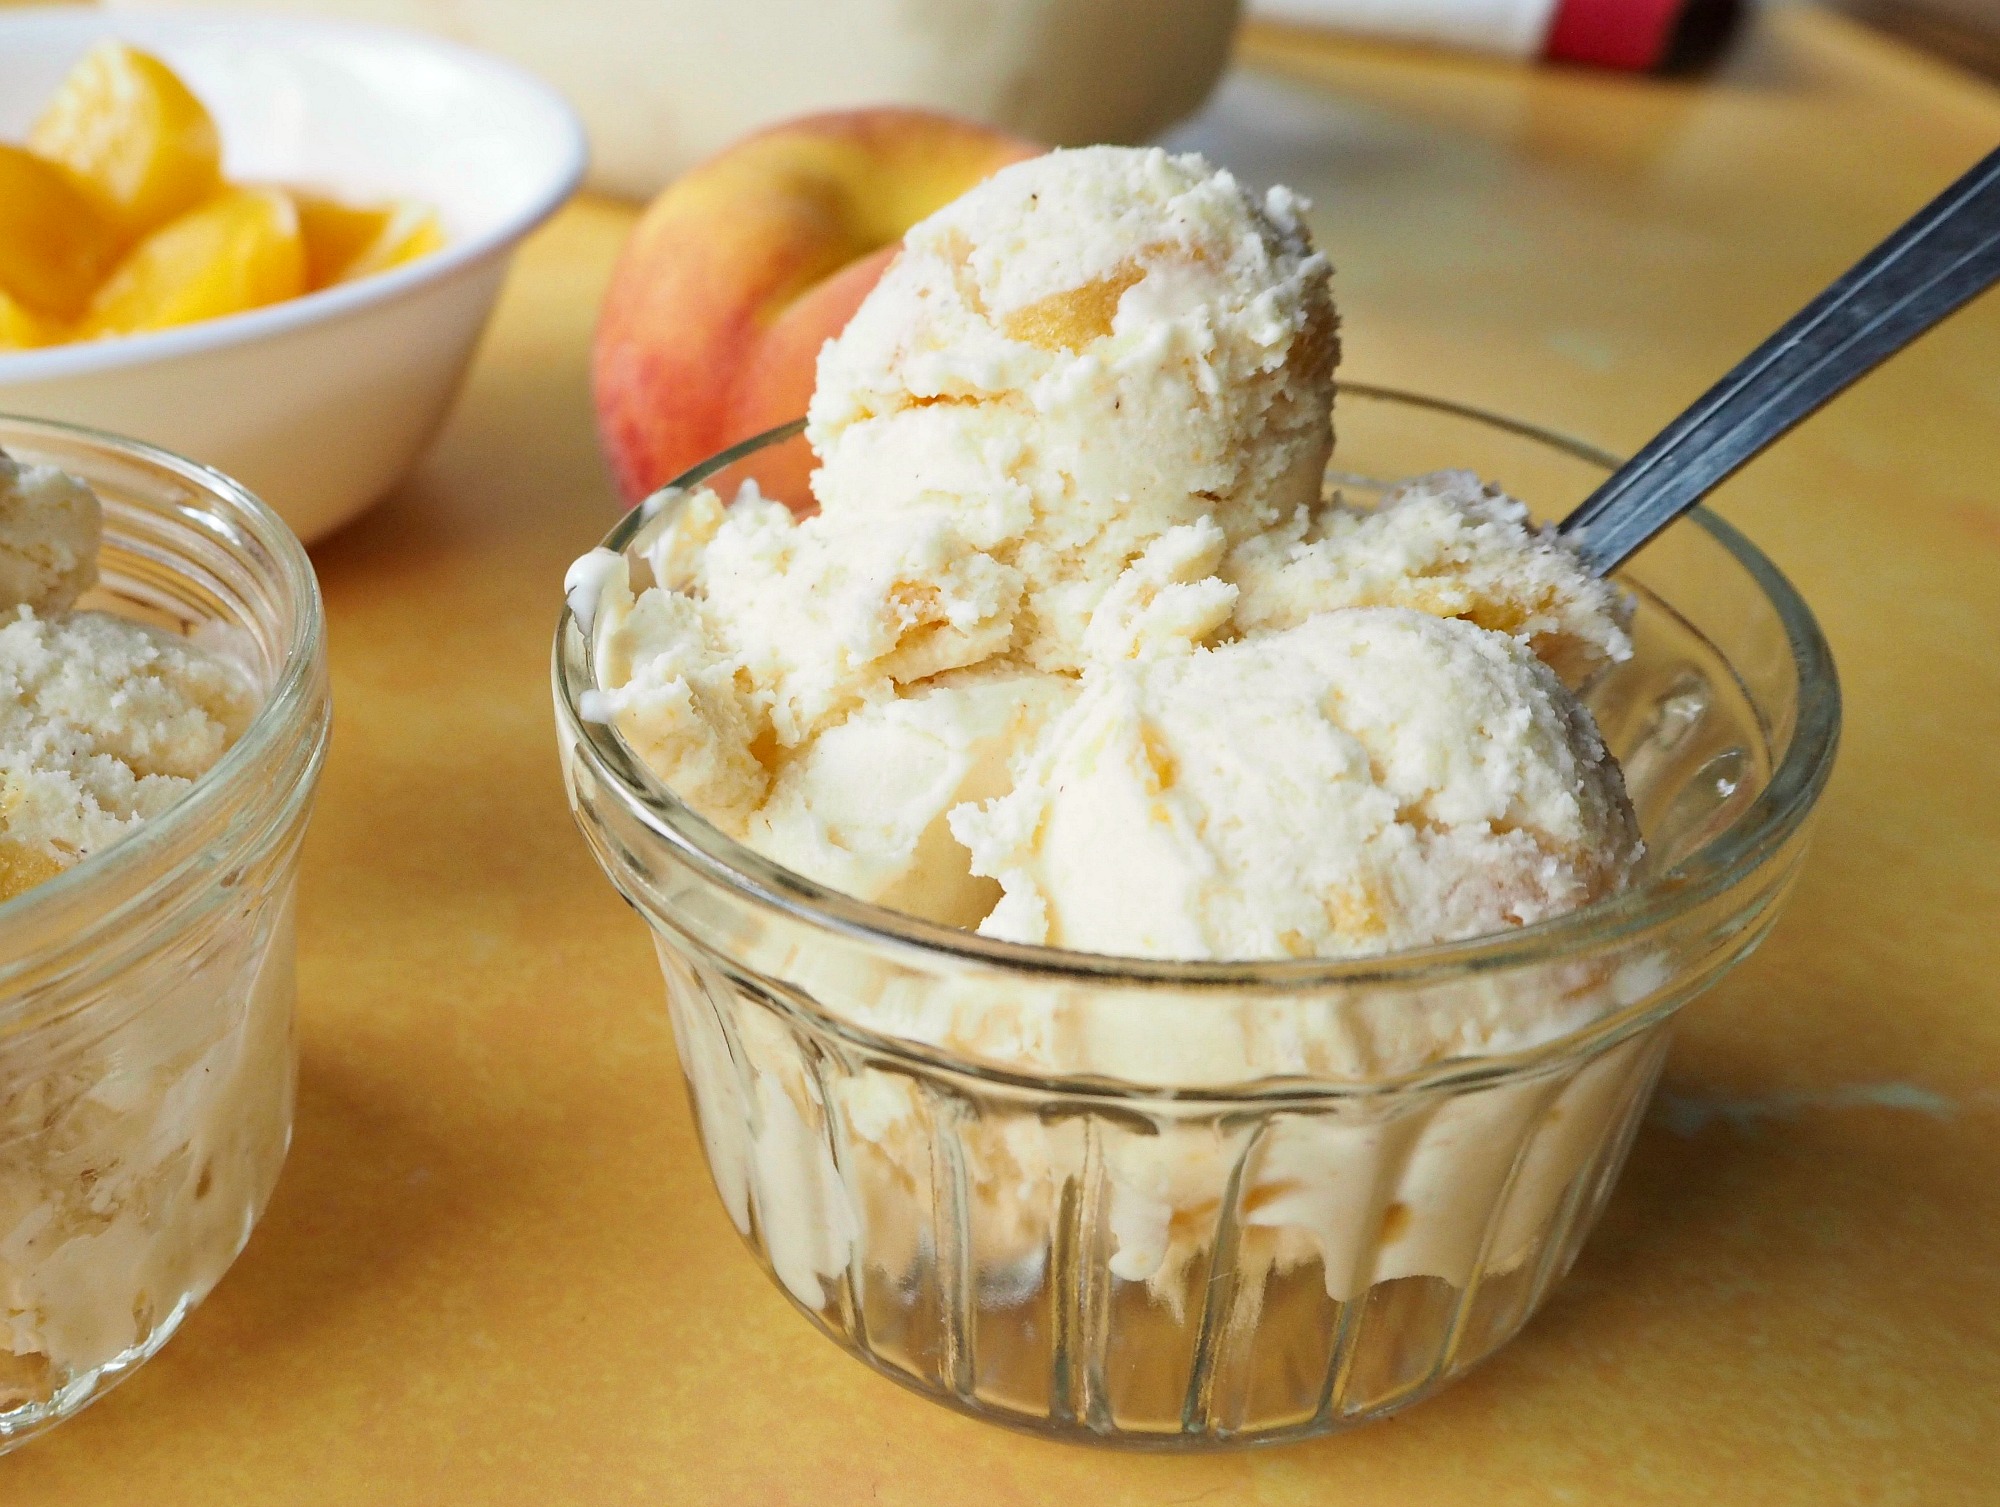 A glass bowl of homemade peach ice cream